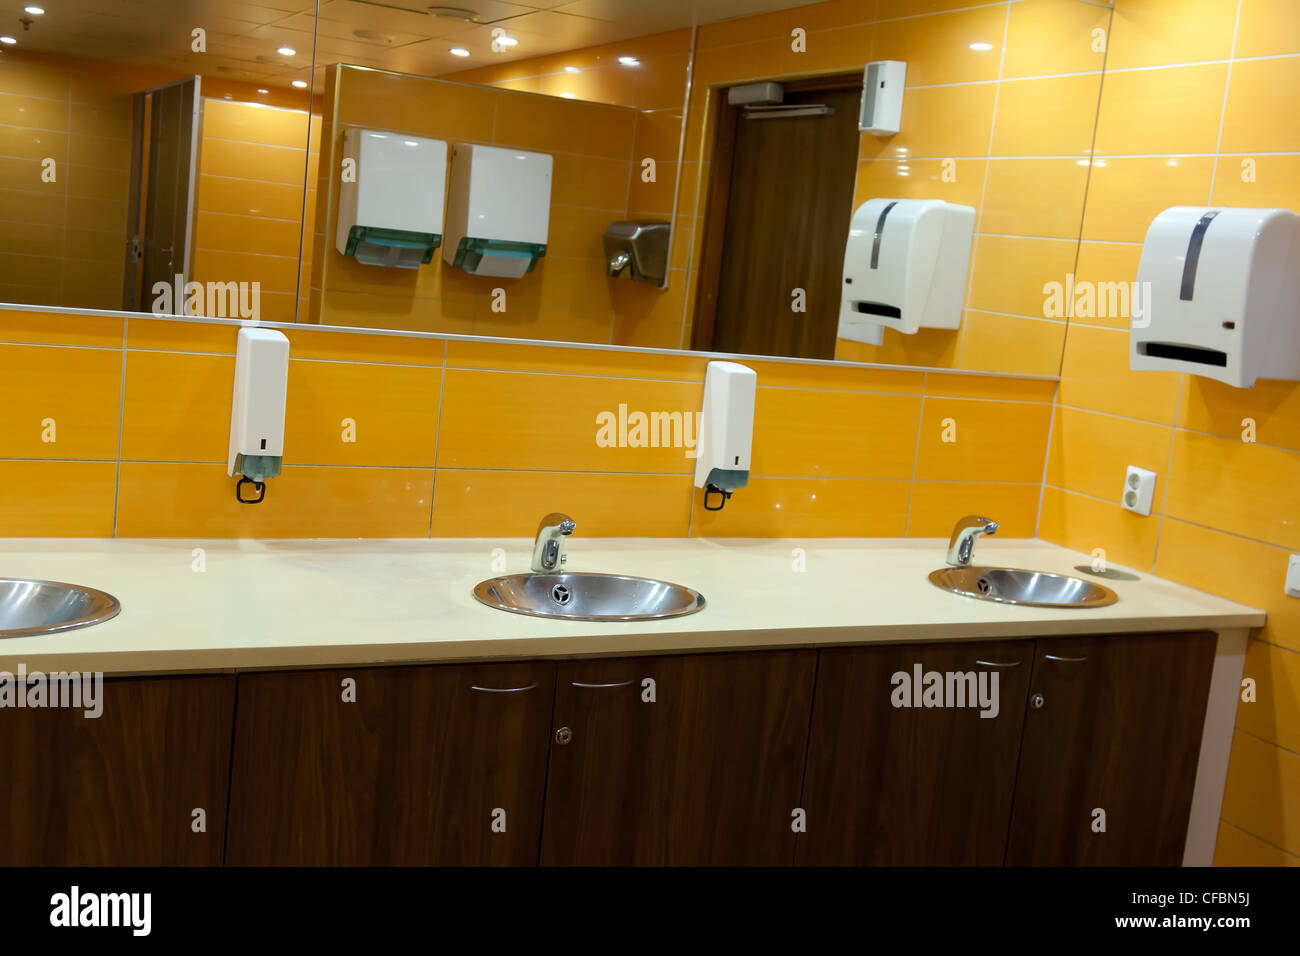 Waschbecken Sie in einer öffentlichen Toilette mit gelben Wänden Stockfoto